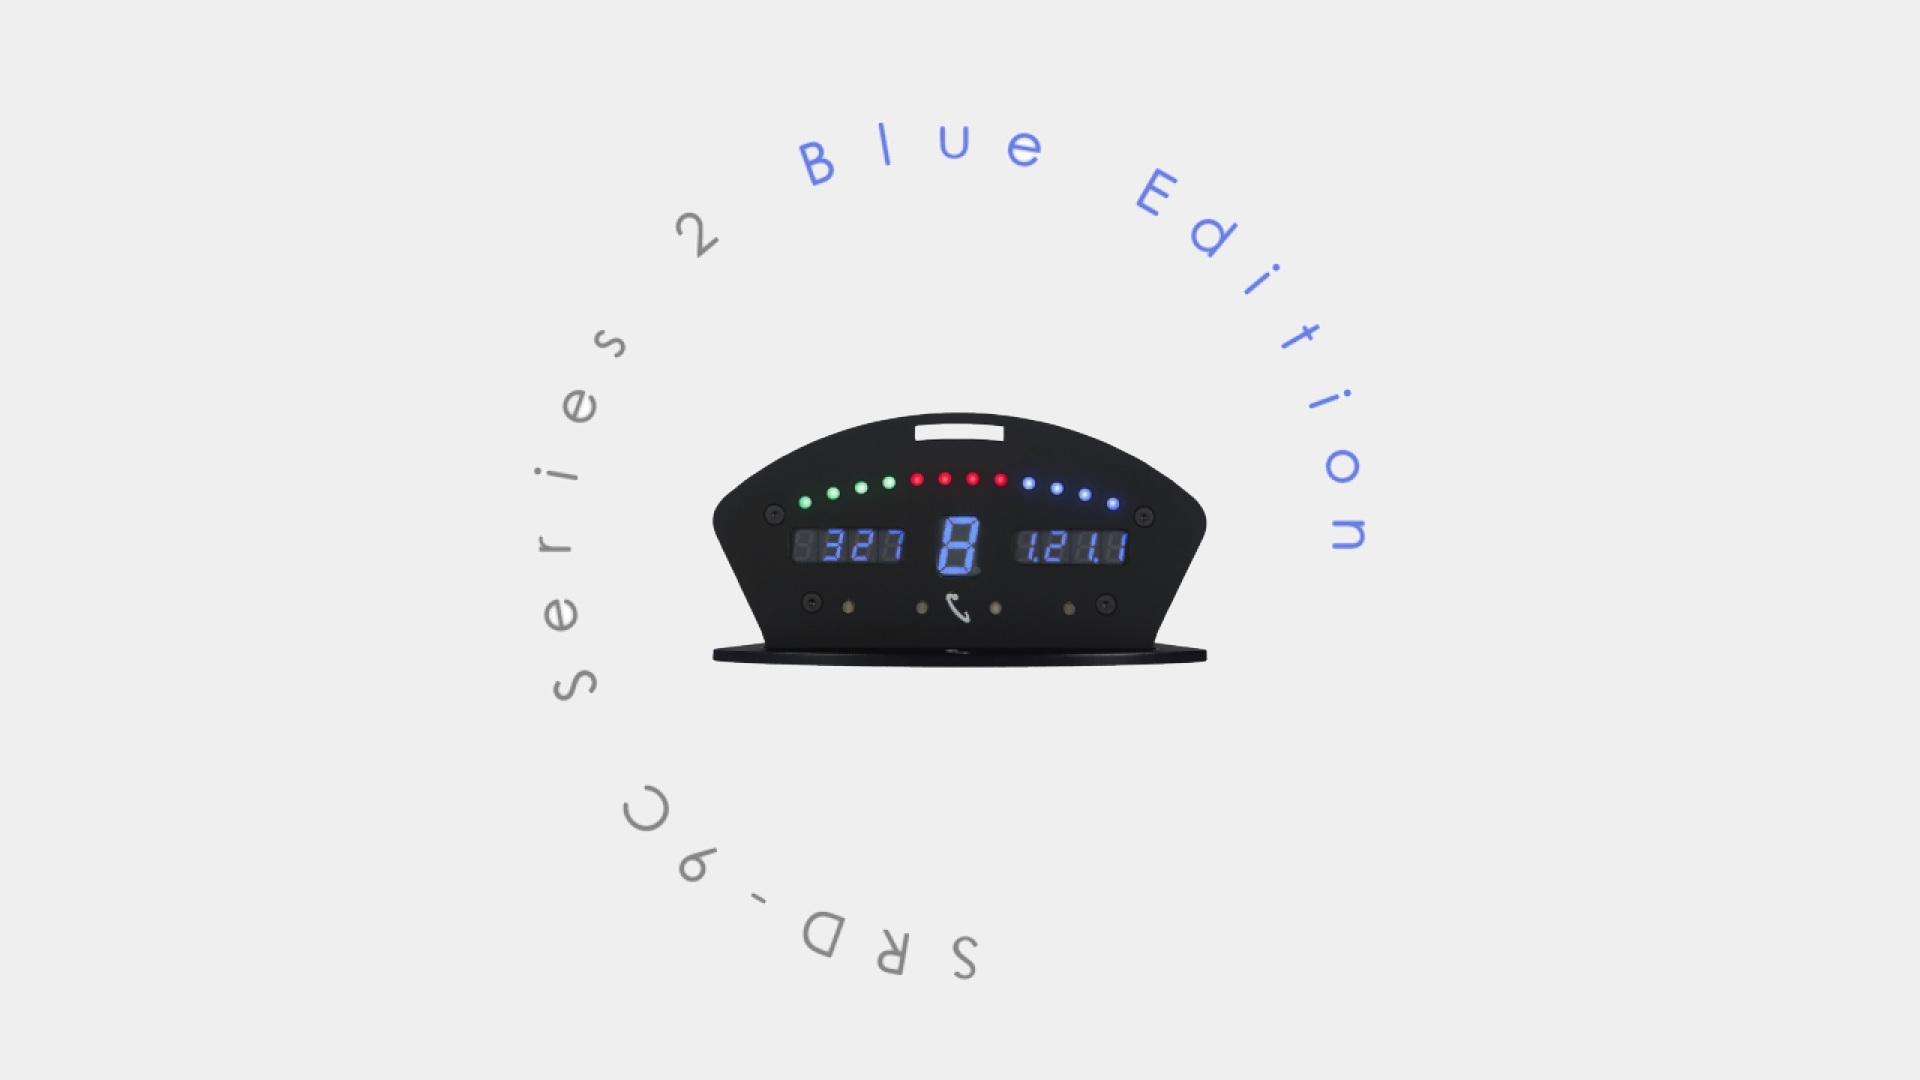 srd-9c-s2-blue-edition-dashboard-display